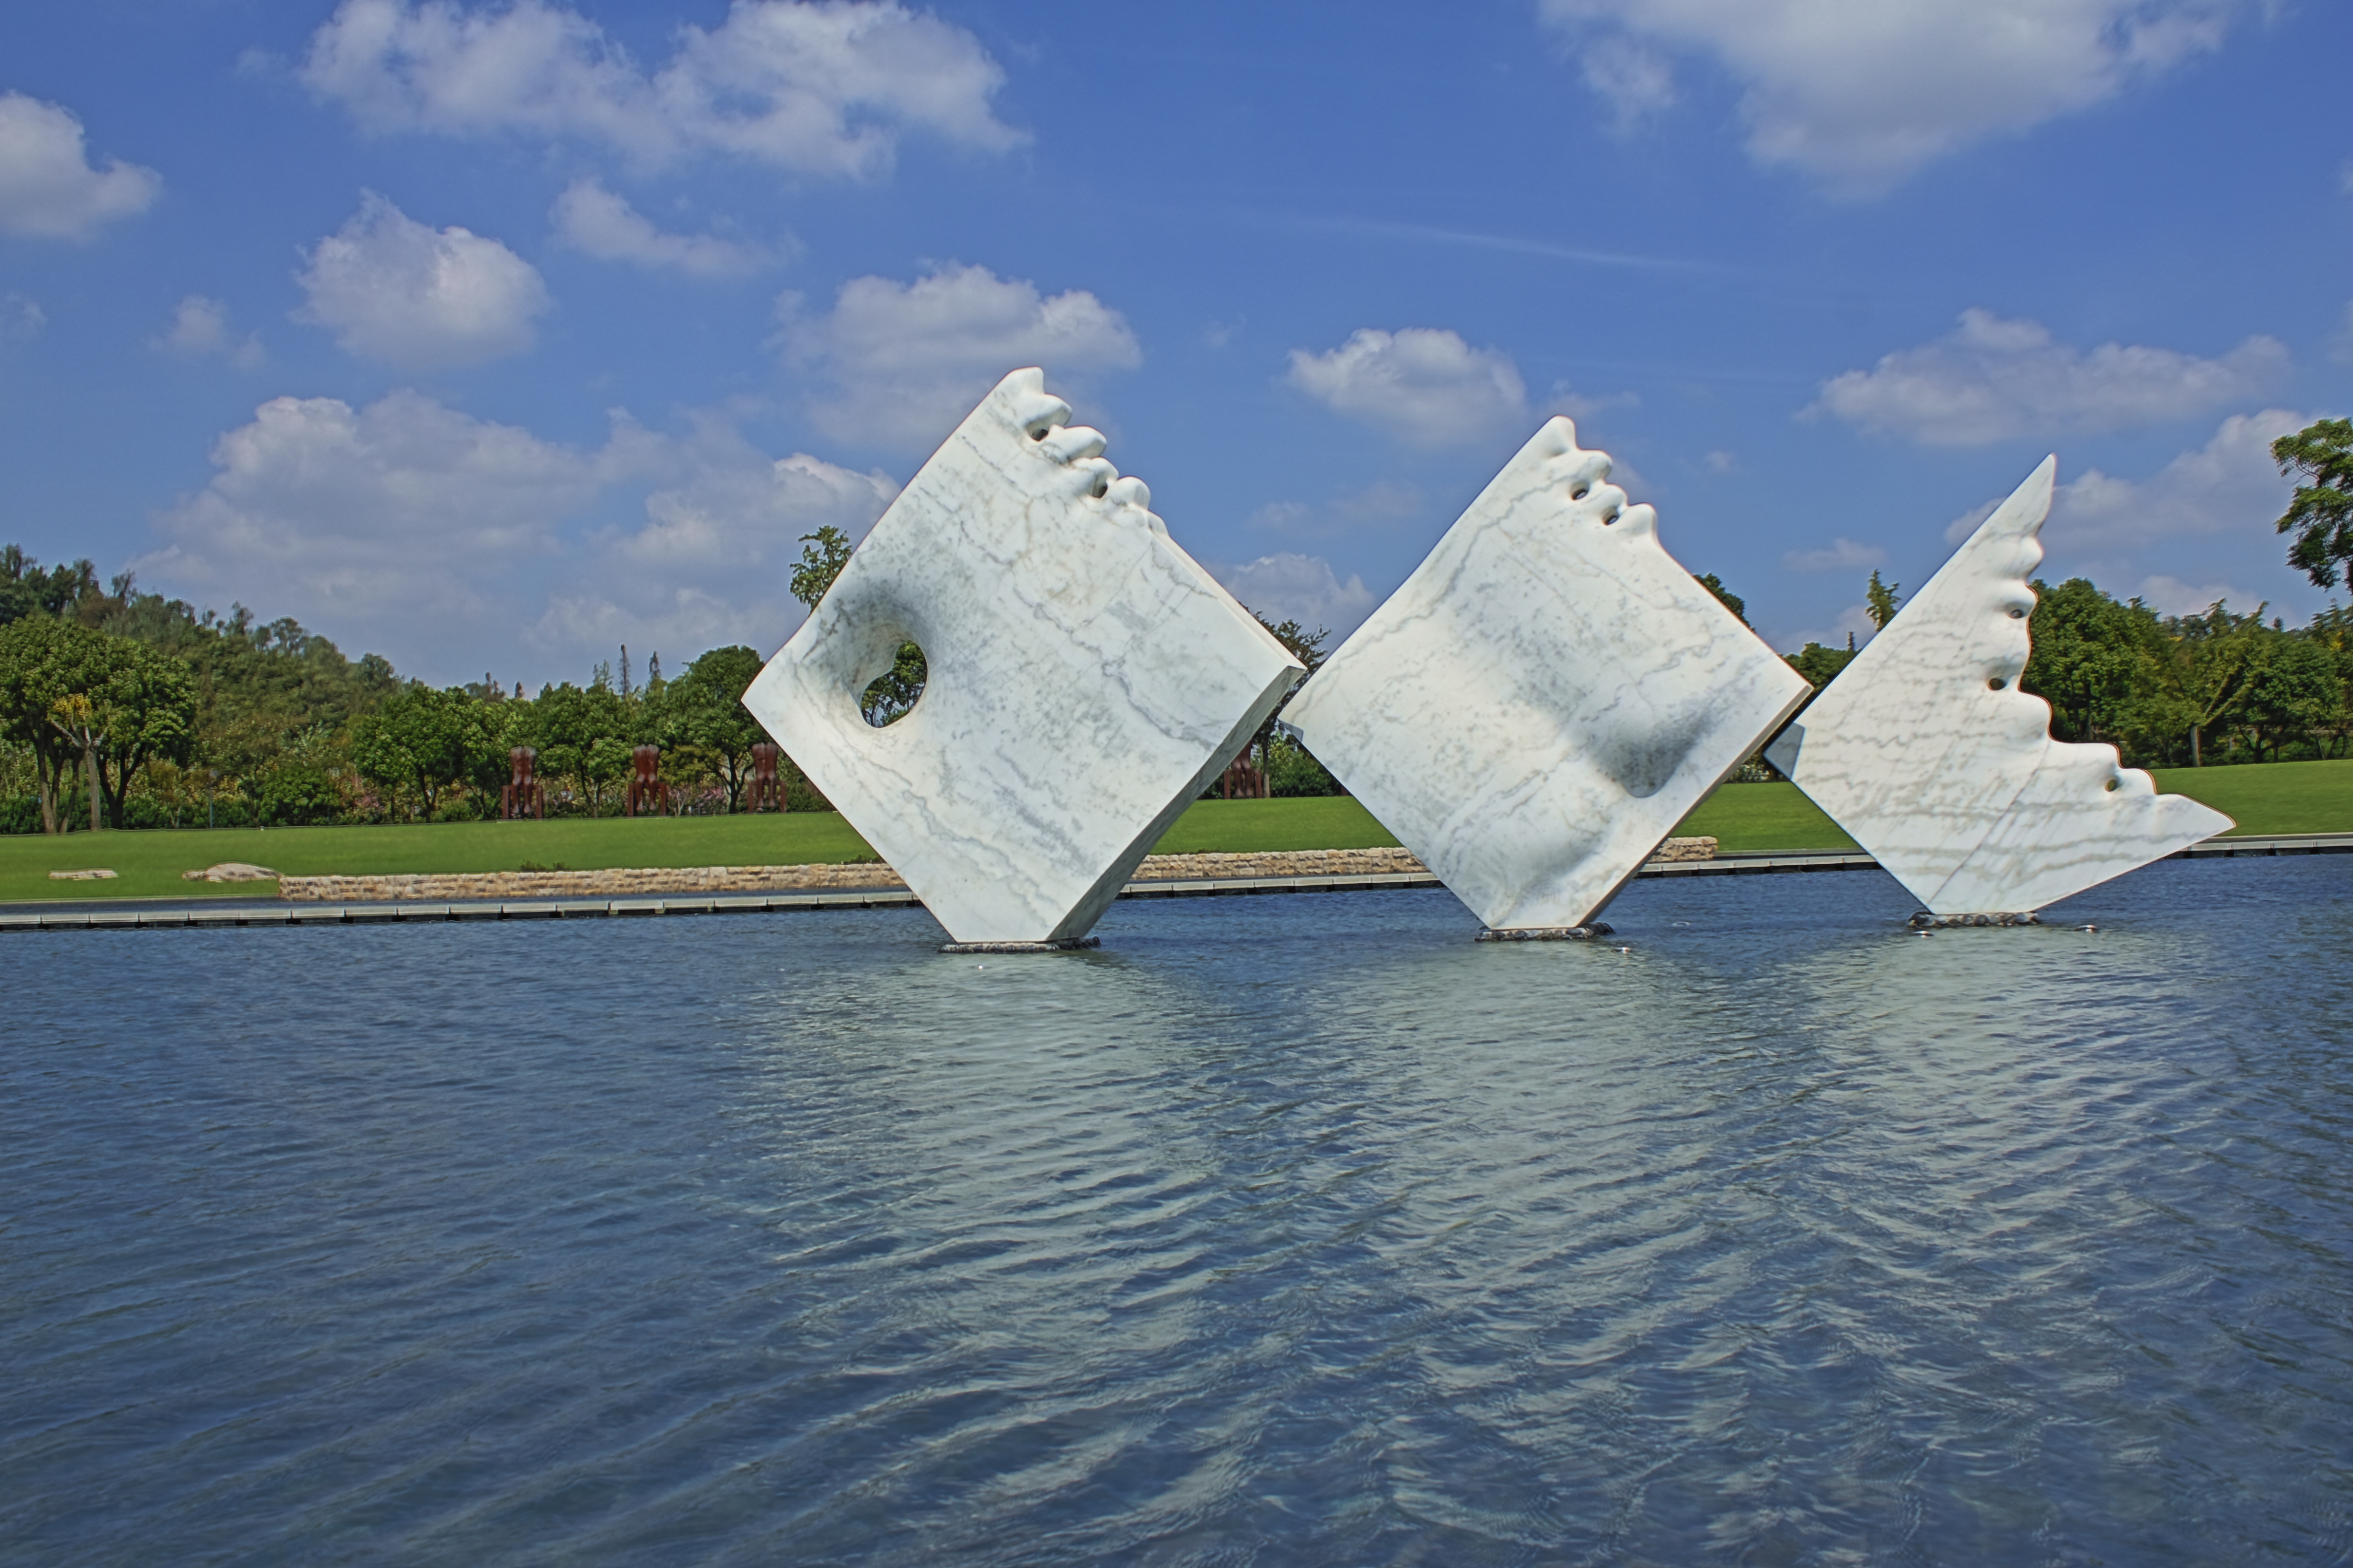 上海松江月湖雕塑公园图片